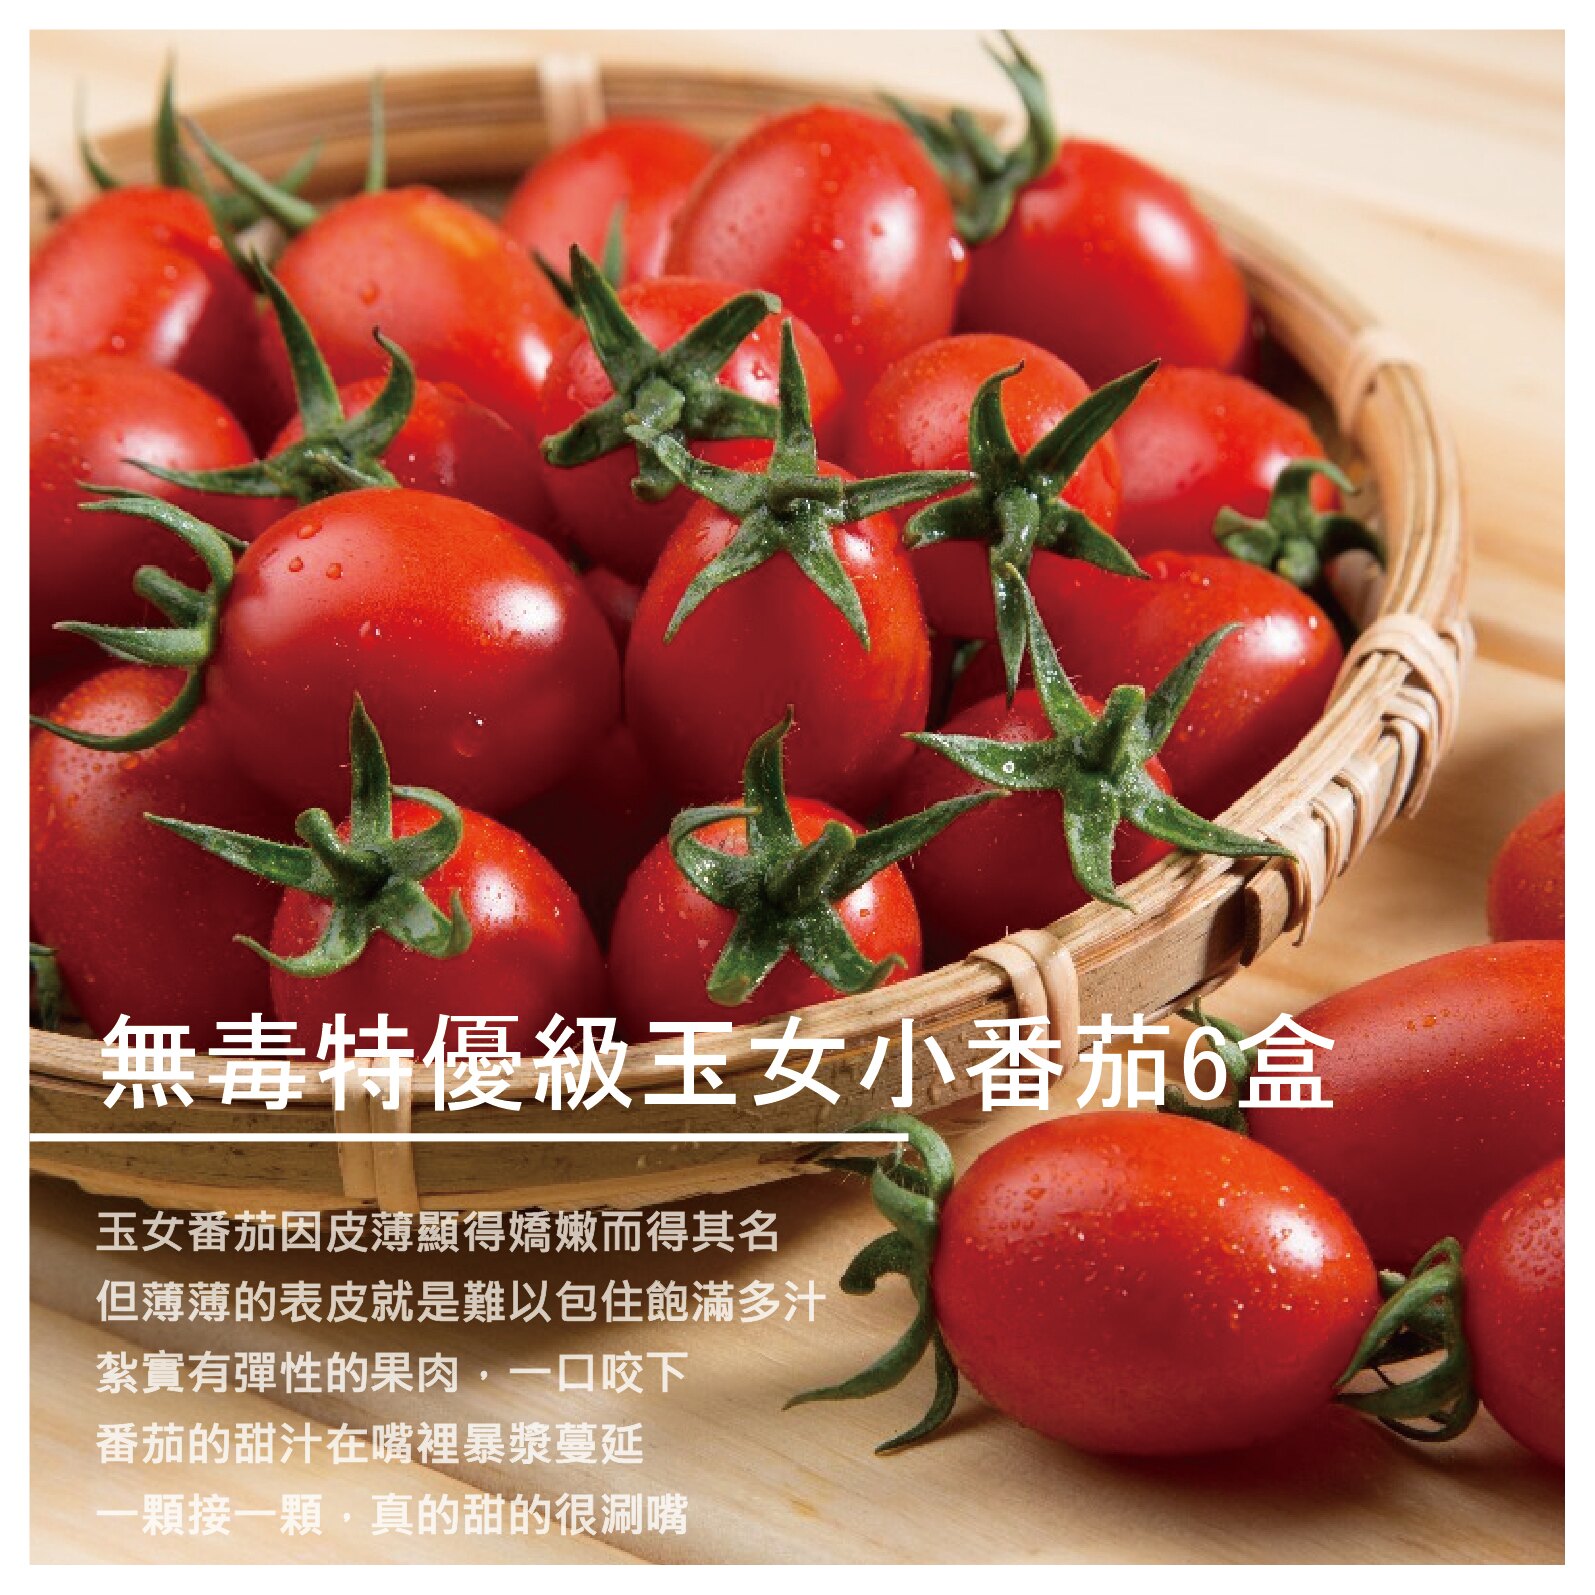 【鴻圖農場】[預購] 無毒特優級玉女小番茄6盒